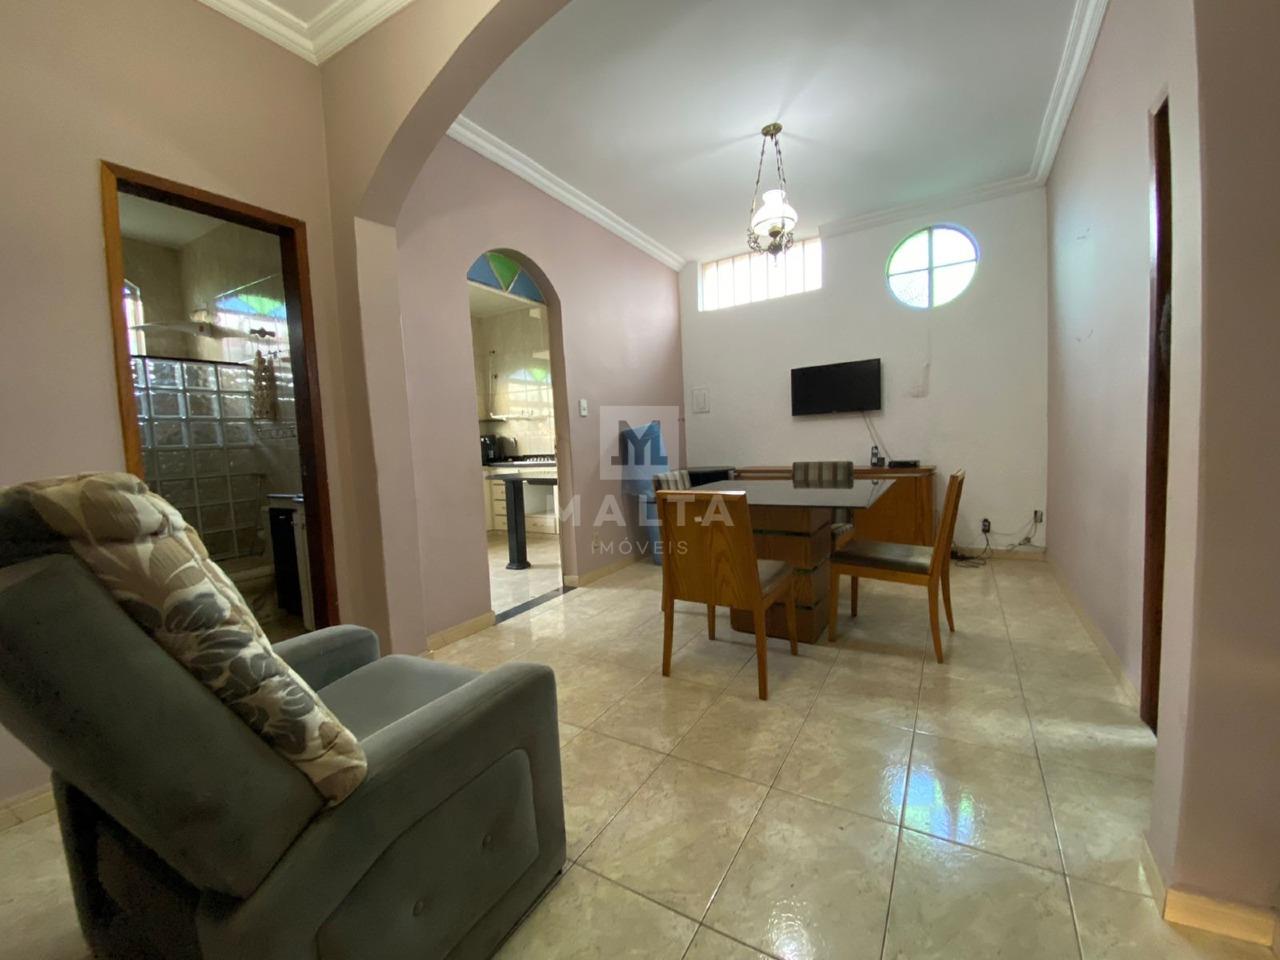 Casa à venda no bairro Santa helena de 3 quartos: Sala de estar